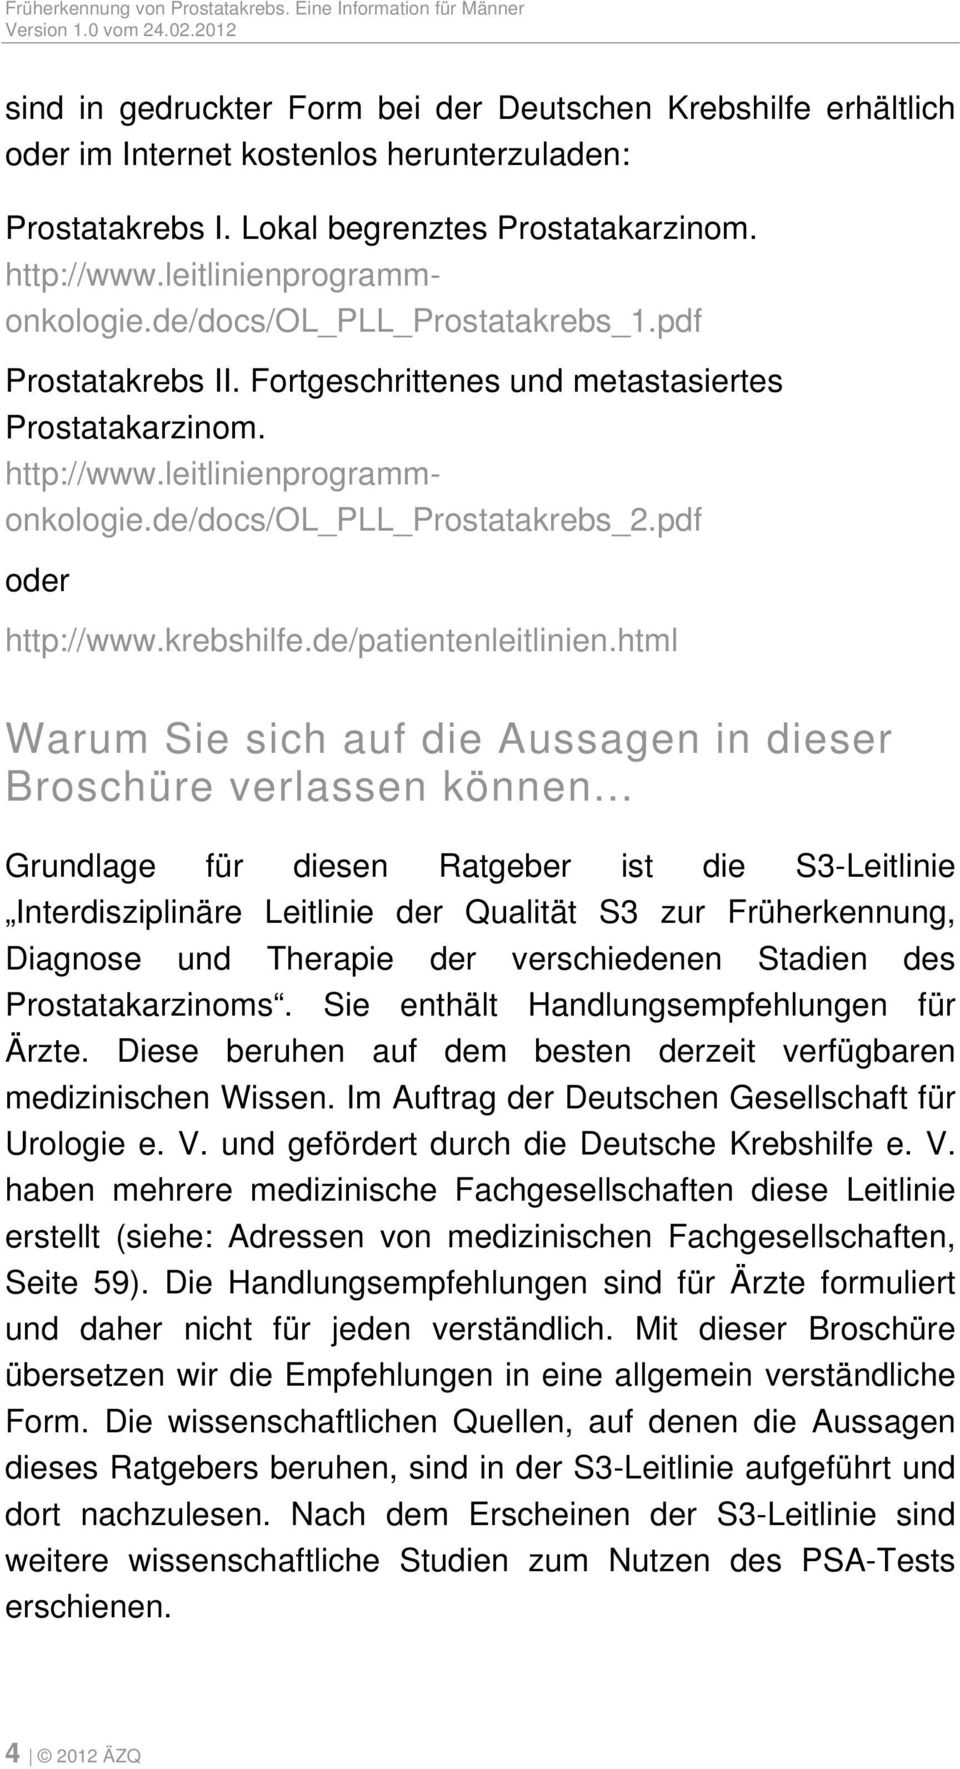 krebshilfe.de/patientenleitlinien.html Warum Sie sich auf die Aussagen in dieser Broschüre verlassen können.